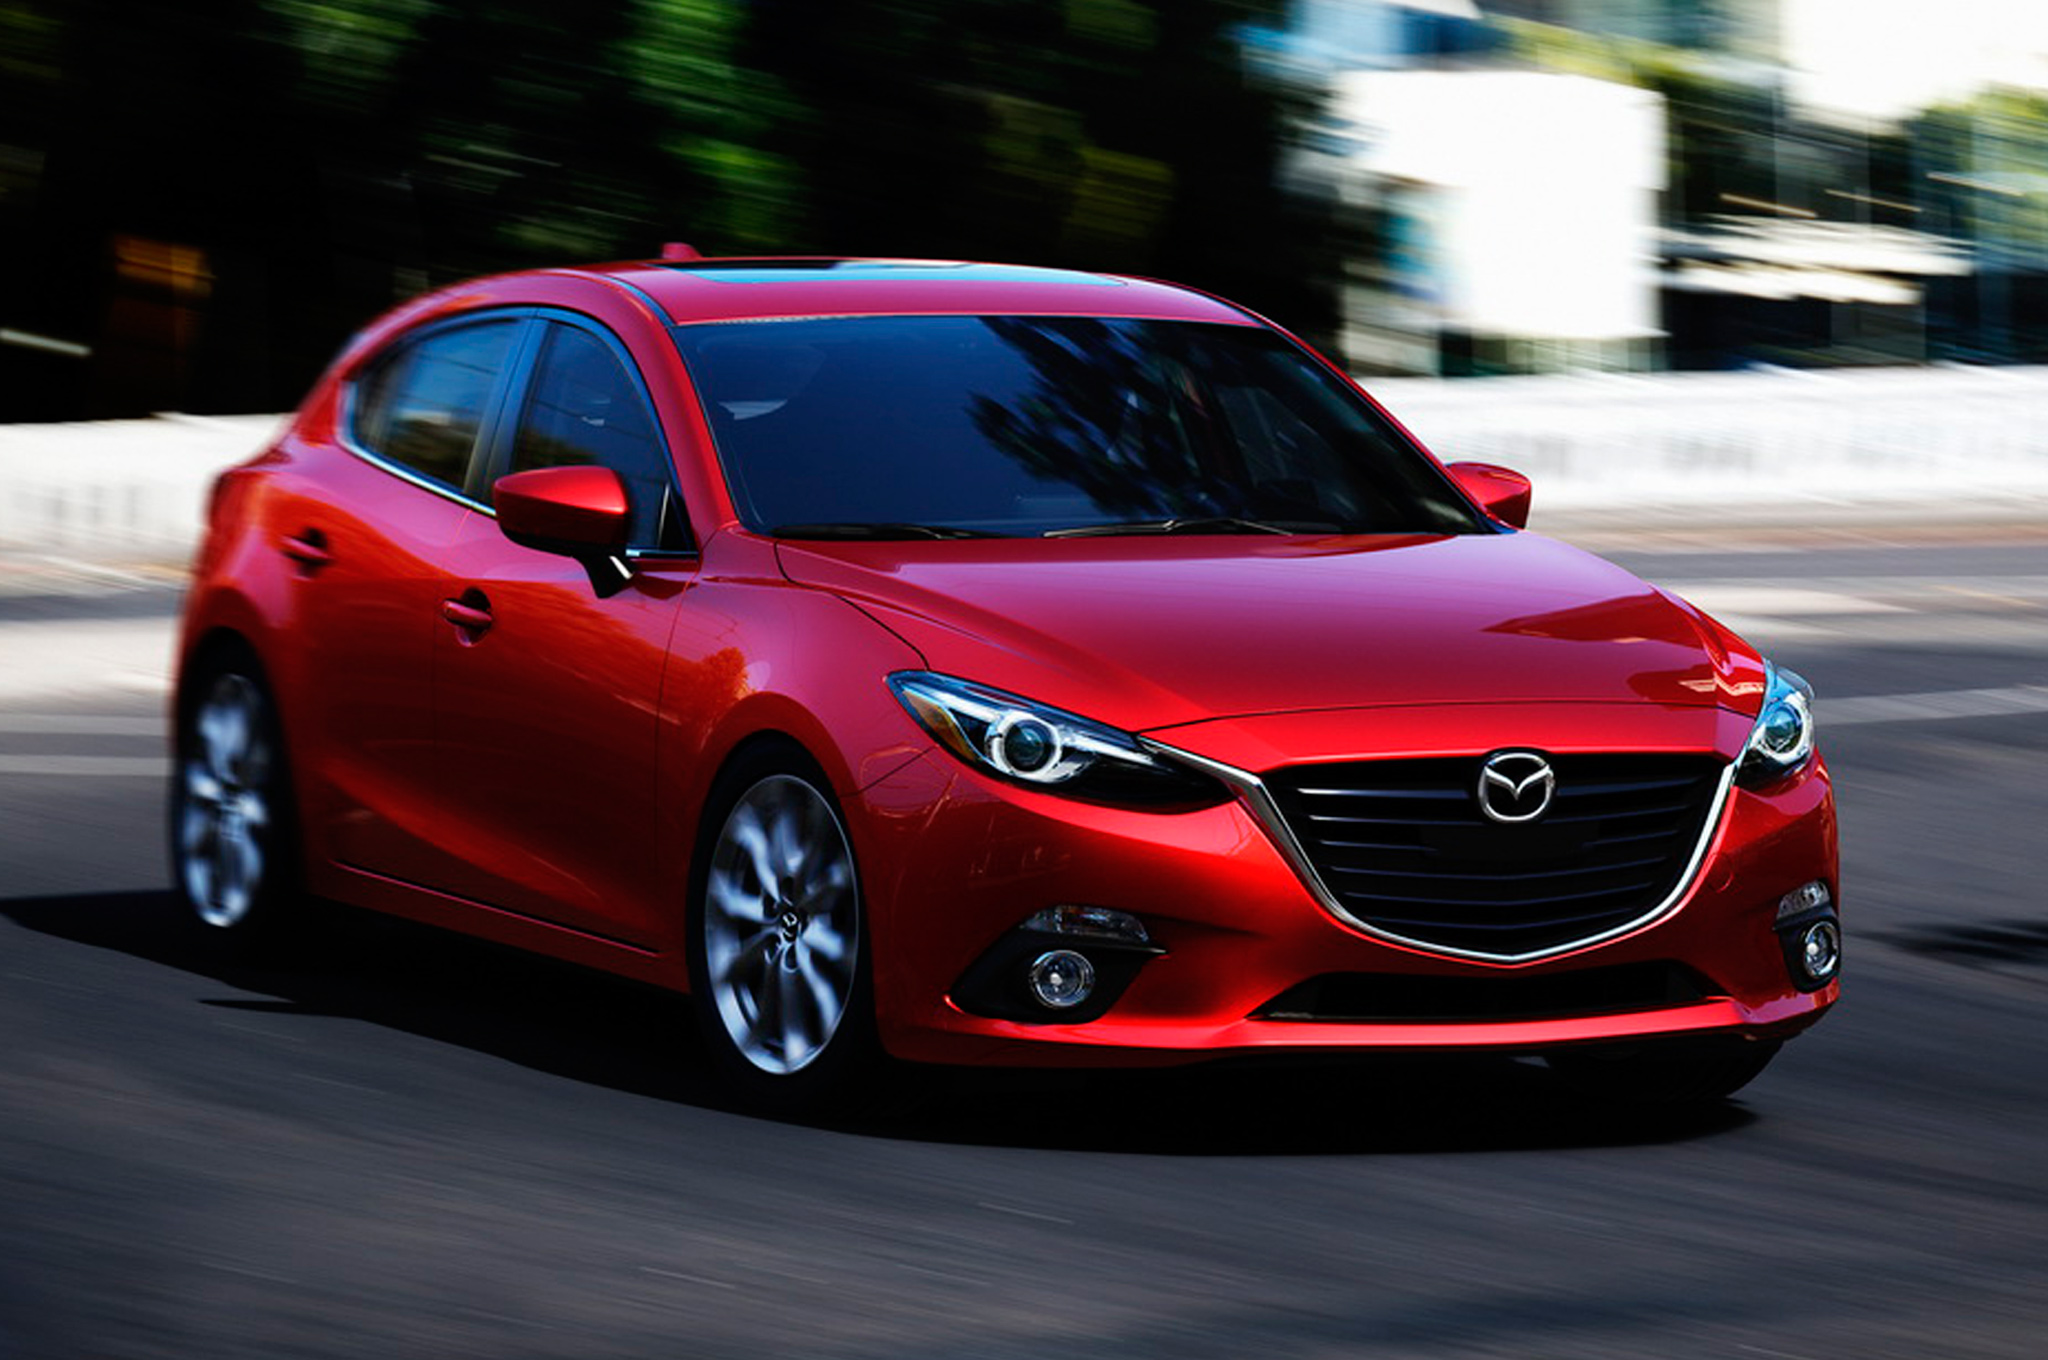 Thế mạnh của Mazda 3 khi so sánh ô tô là cảm giác lái ổn định